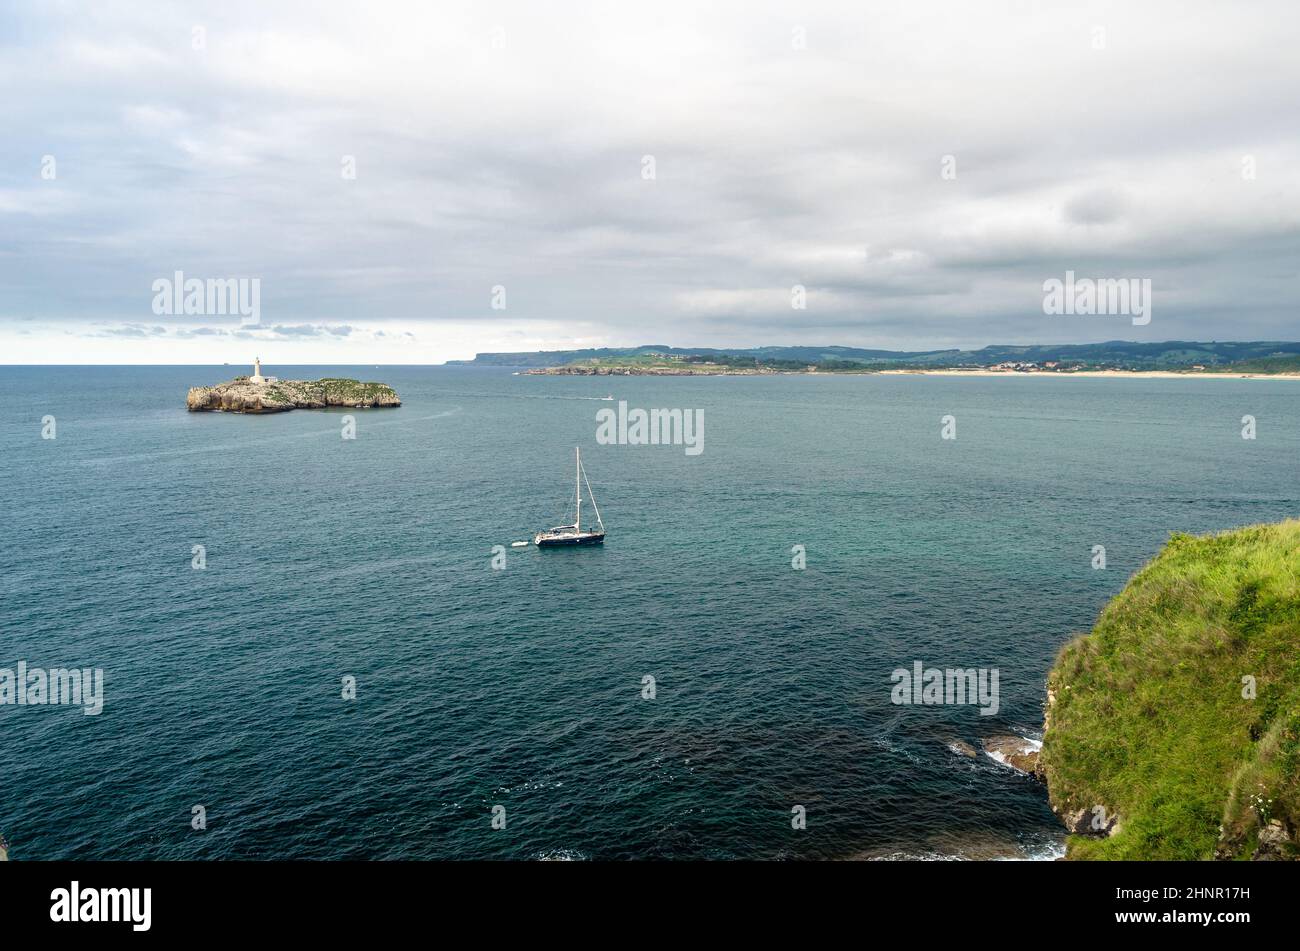 SANTANDER, ESPAGNE - 9 JUILLET 2021: Vue de la péninsule de Magdalena, Santander, Espagne, avec un petit bateau à voile et l'île de Mouro en arrière-plan avec son phare du 19th siècle Banque D'Images